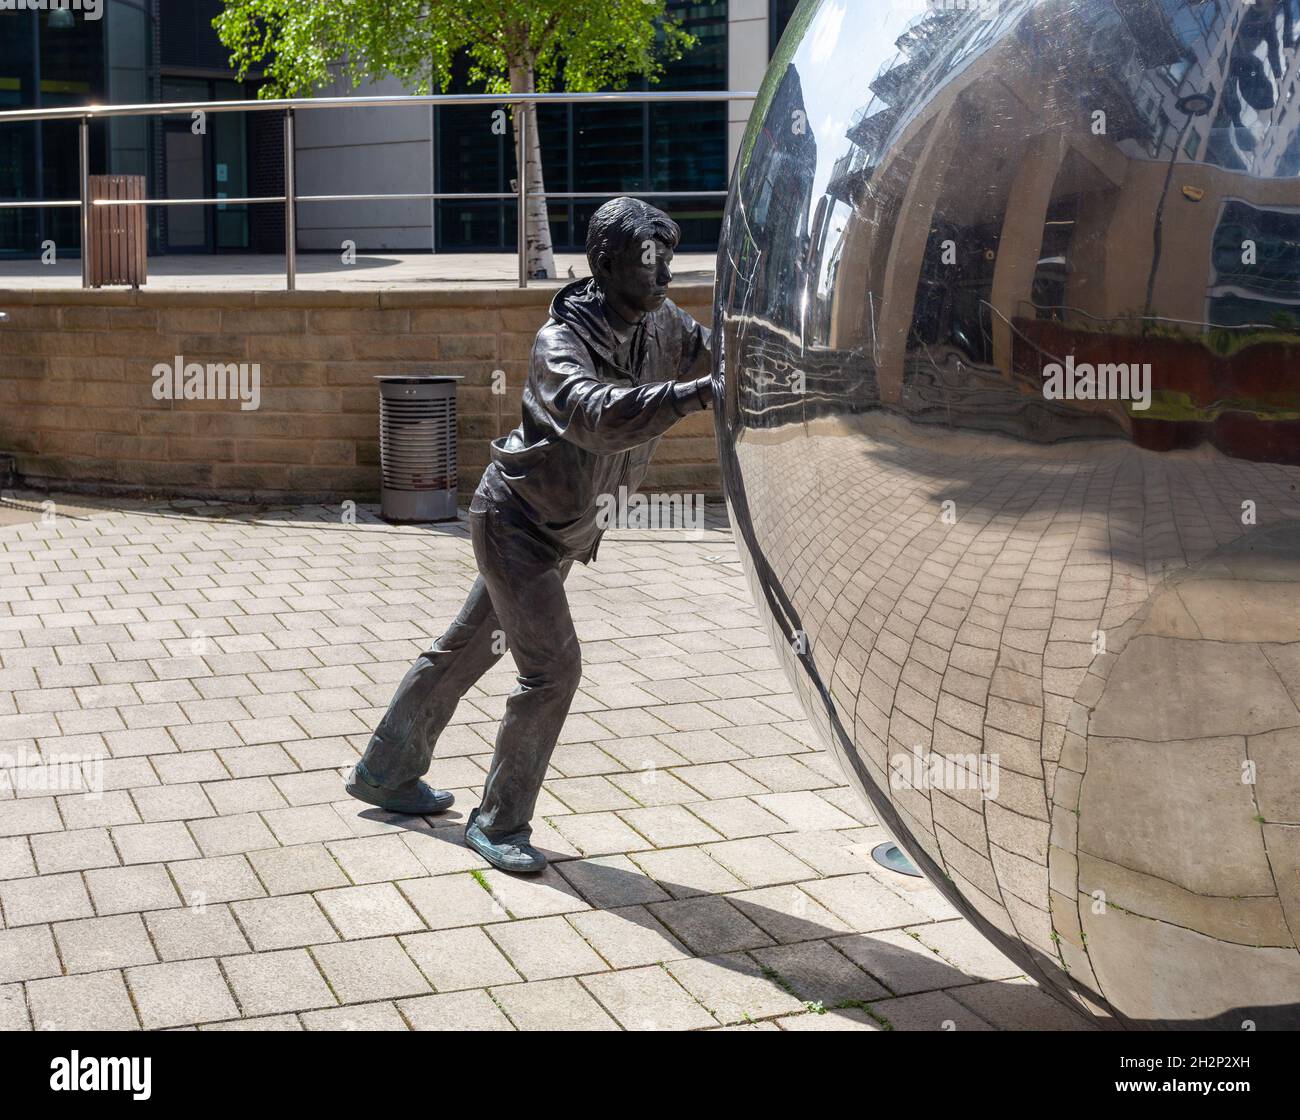 Un approccio riflessivo - scultura di un ragazzo che spinge una sfera riflettente al Clarence Dock, nel centro di Leeds Foto Stock